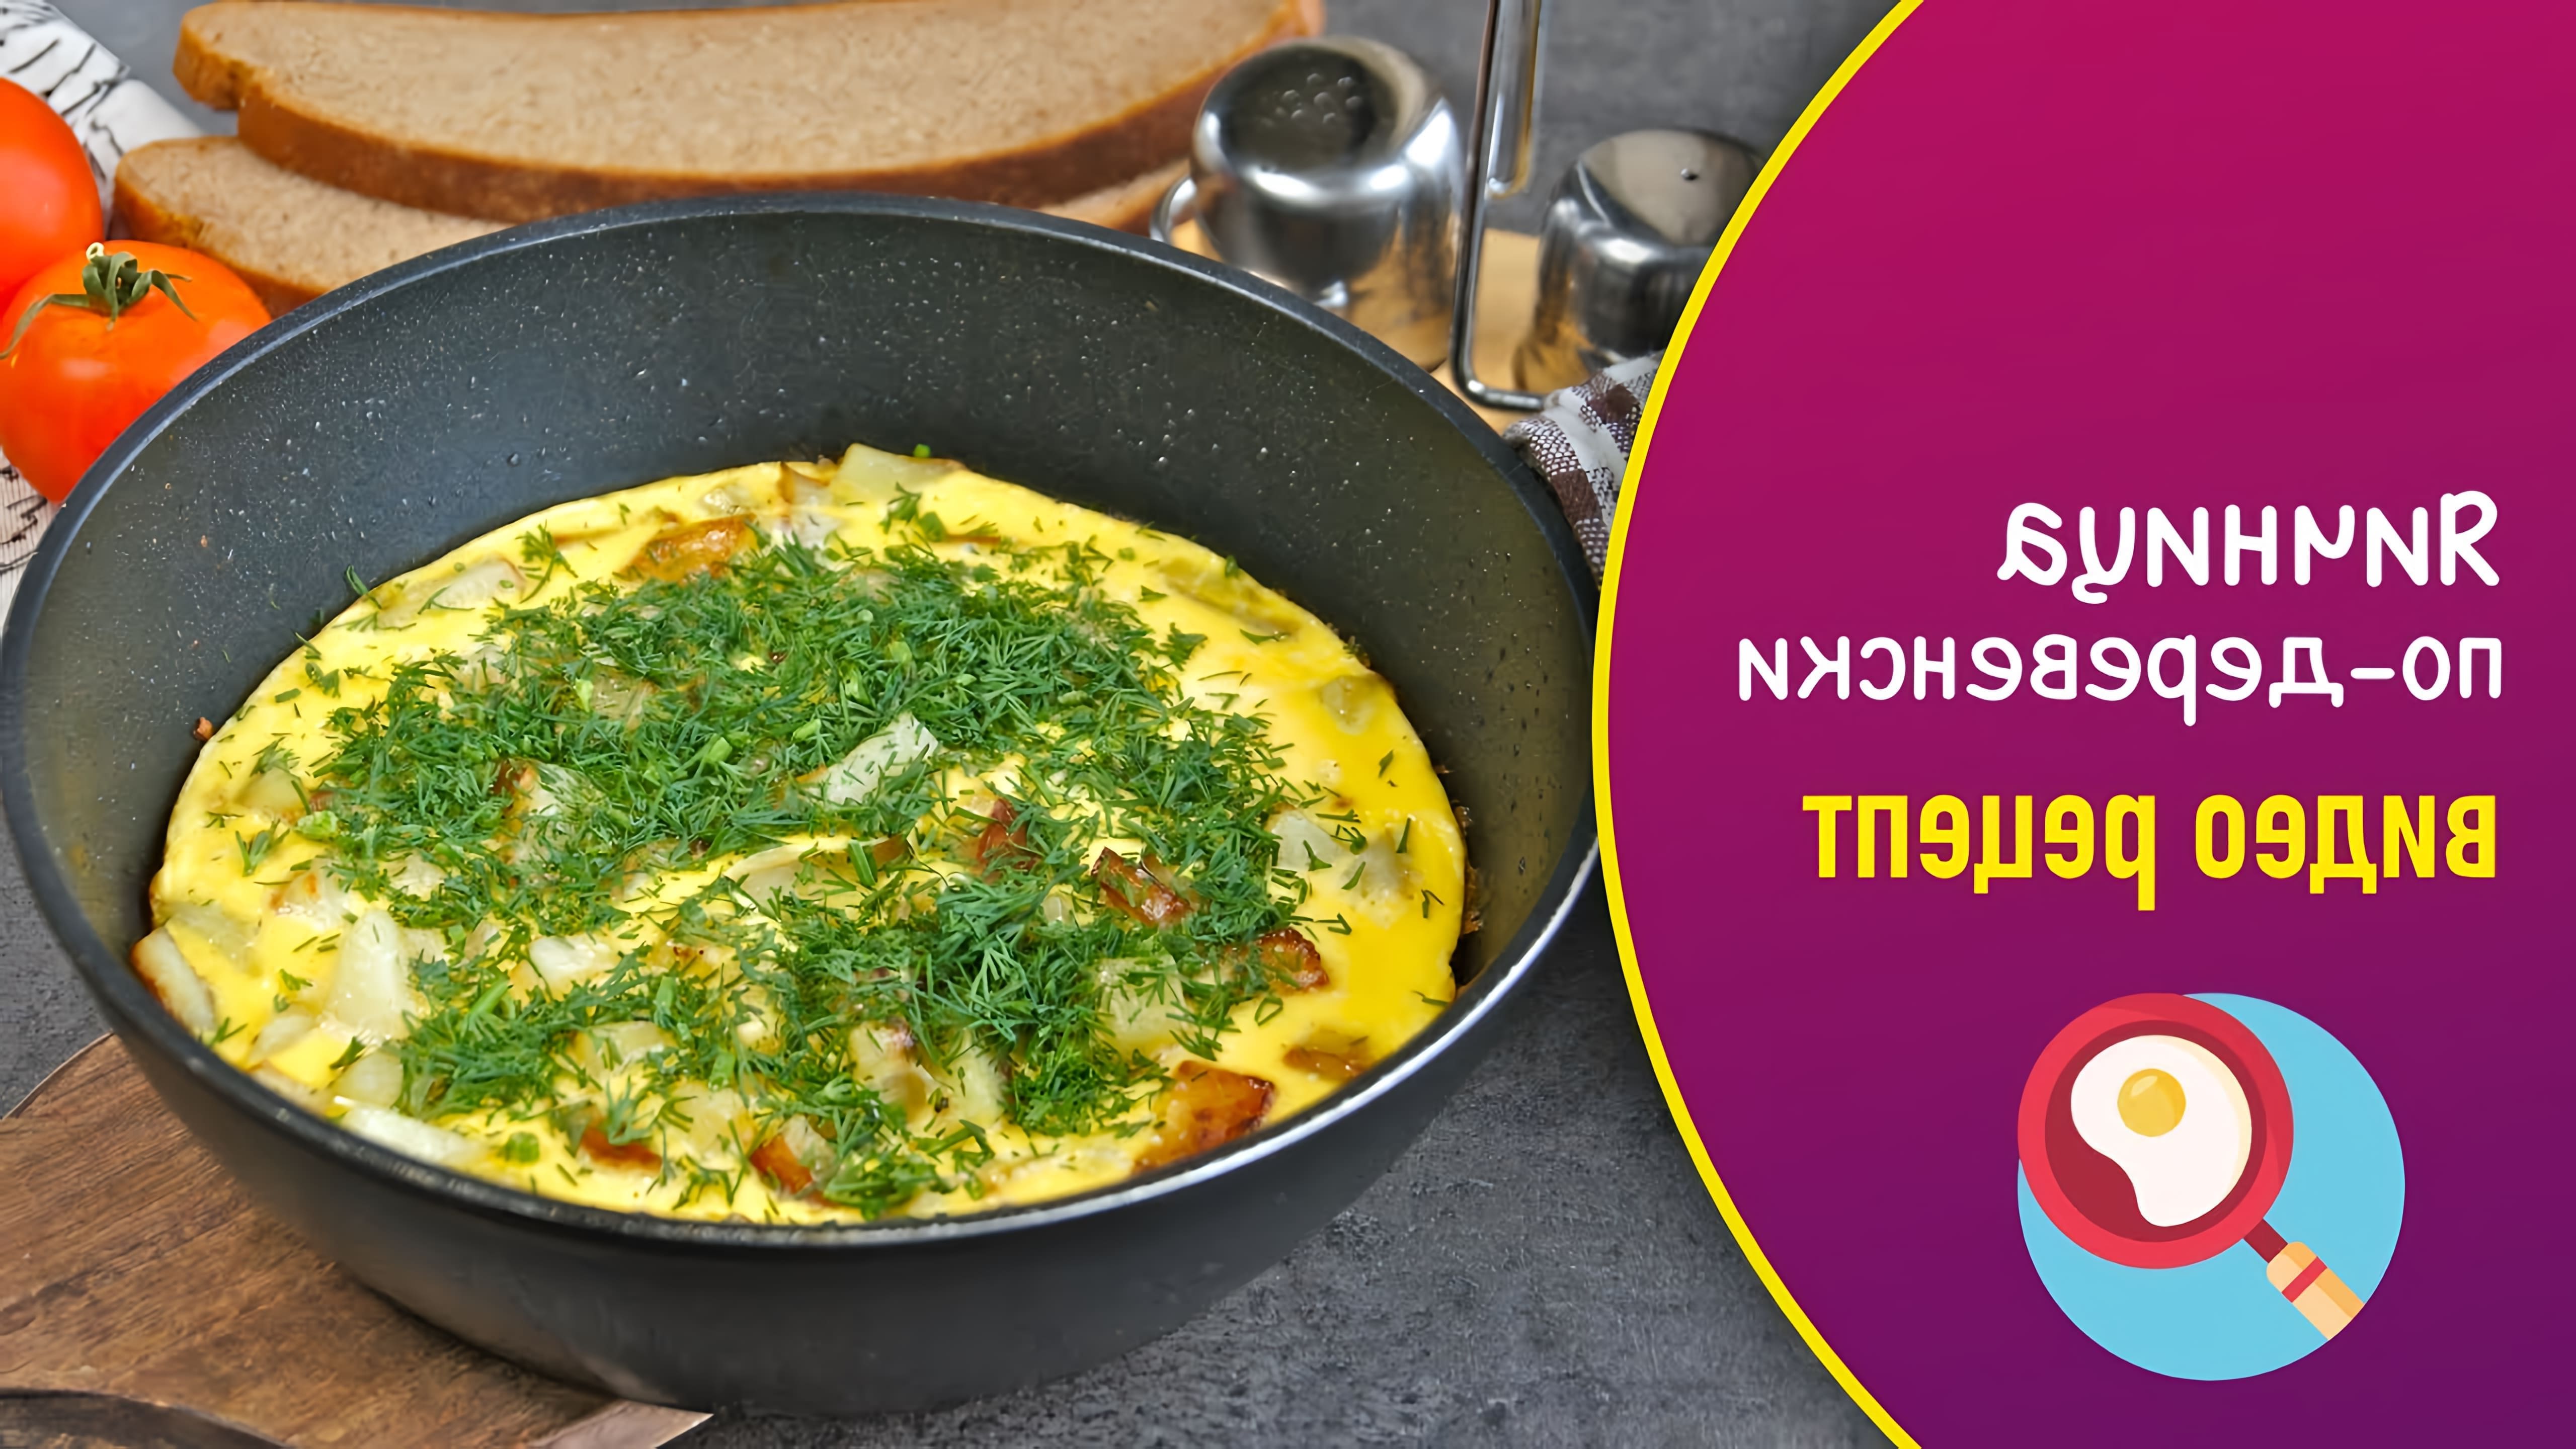 Яичница по-деревенски - это необычный и вкусный завтрак, который можно приготовить из яиц и картофеля